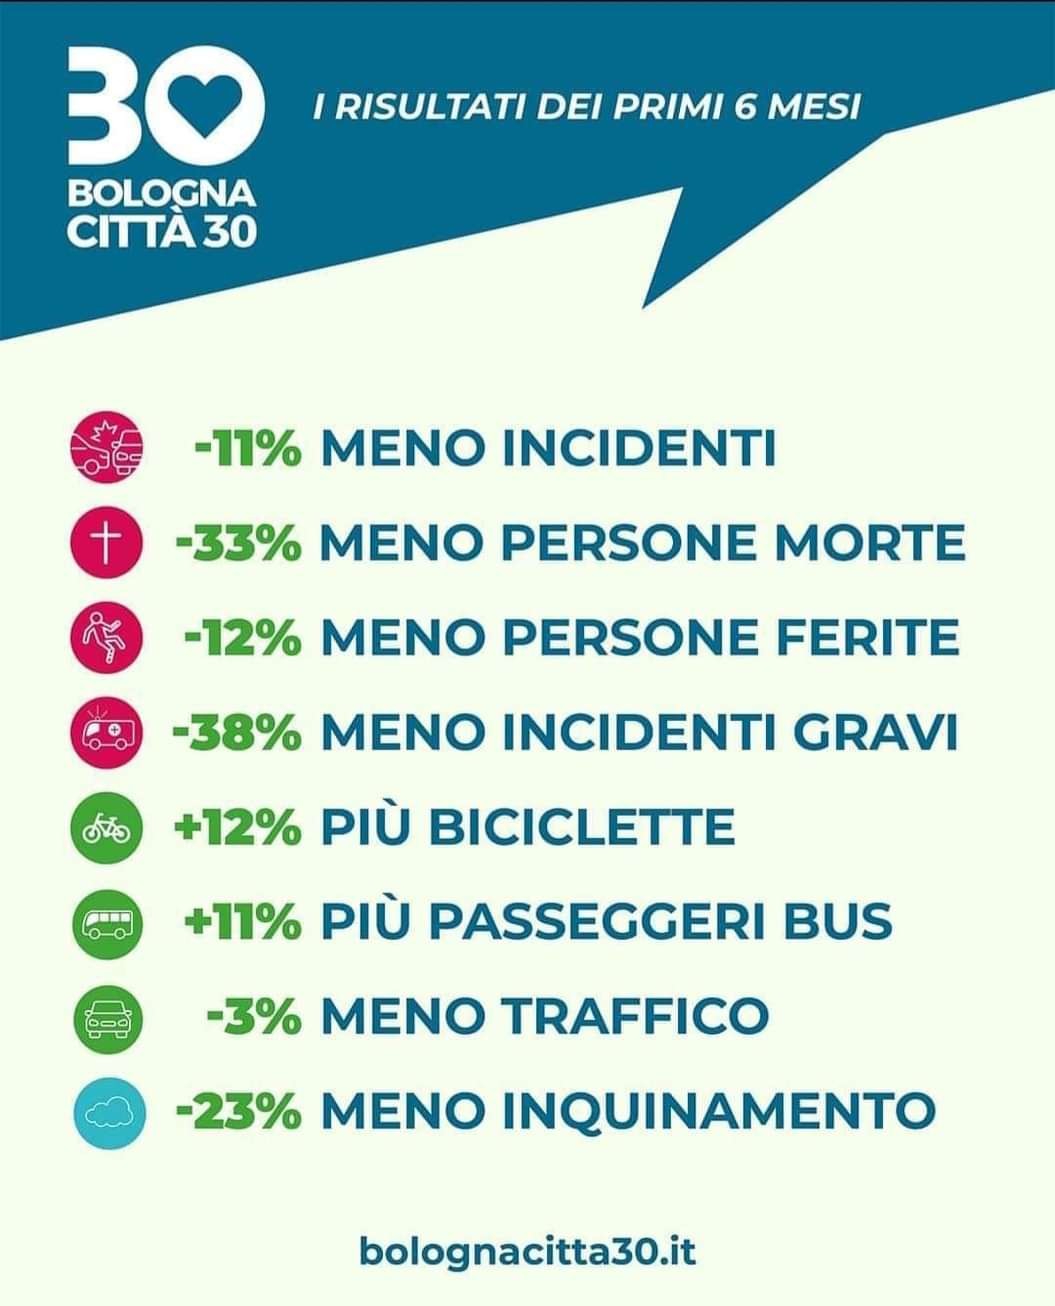 Infografica che riassume gli effetti positivi della citta 30 a Bologna nei primi 6 mesi dall'applicazione.

Il testo è lo stesso riportato nel toot